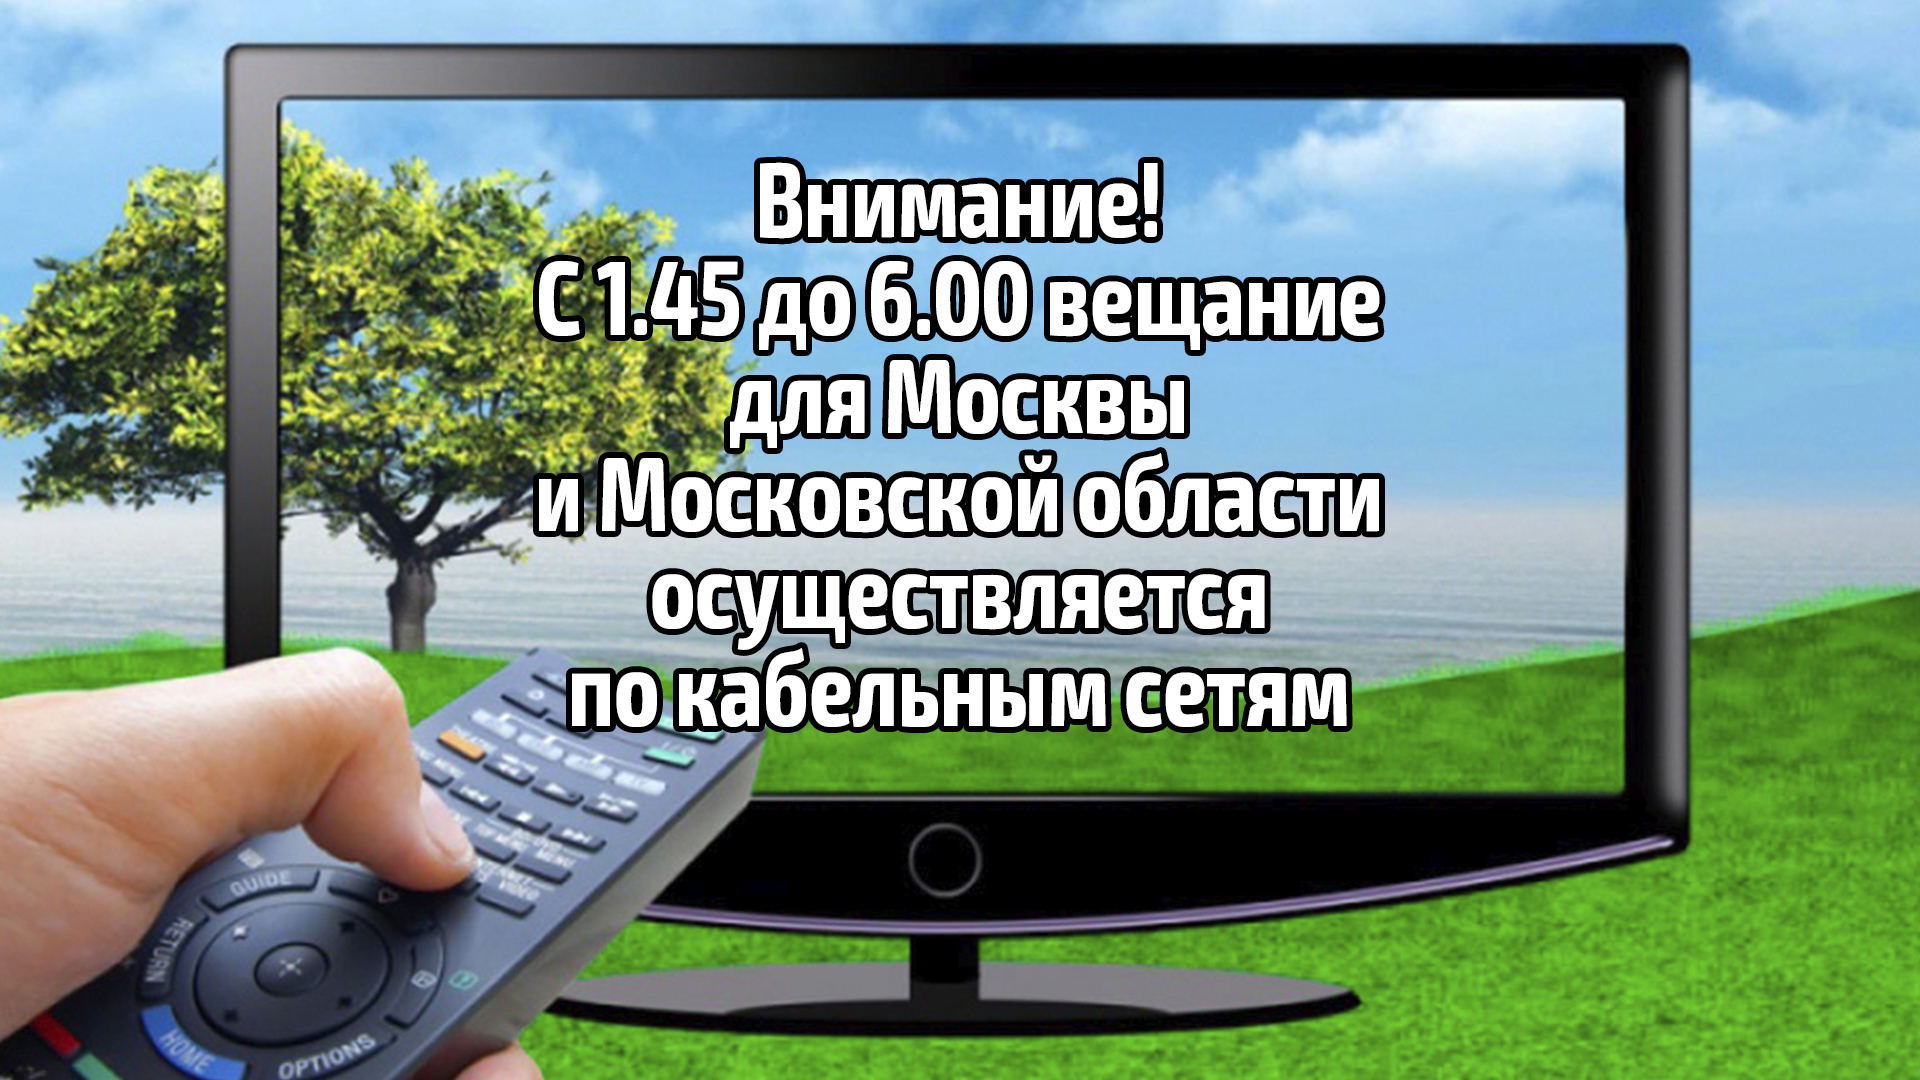 Внимание! С 1.45 до 6.00 вещание для Москвы и Московской области осуществляется по кабельным сетям